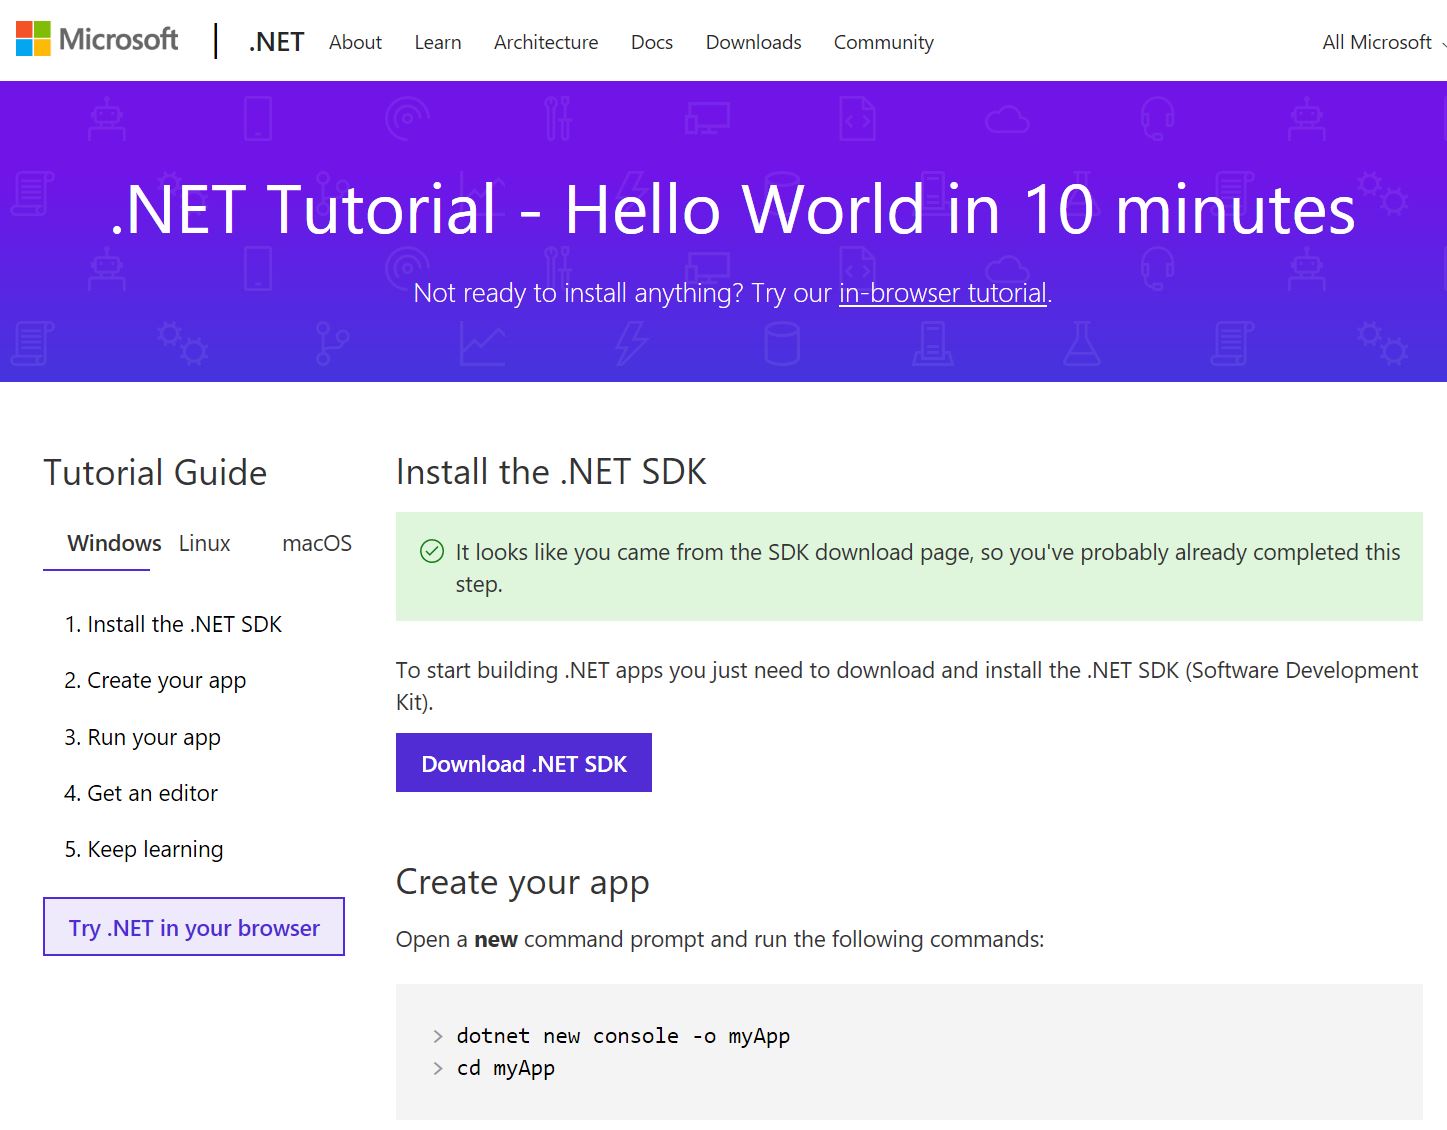 Figura 2. El tutorial con el botón de Try .NET in your browser